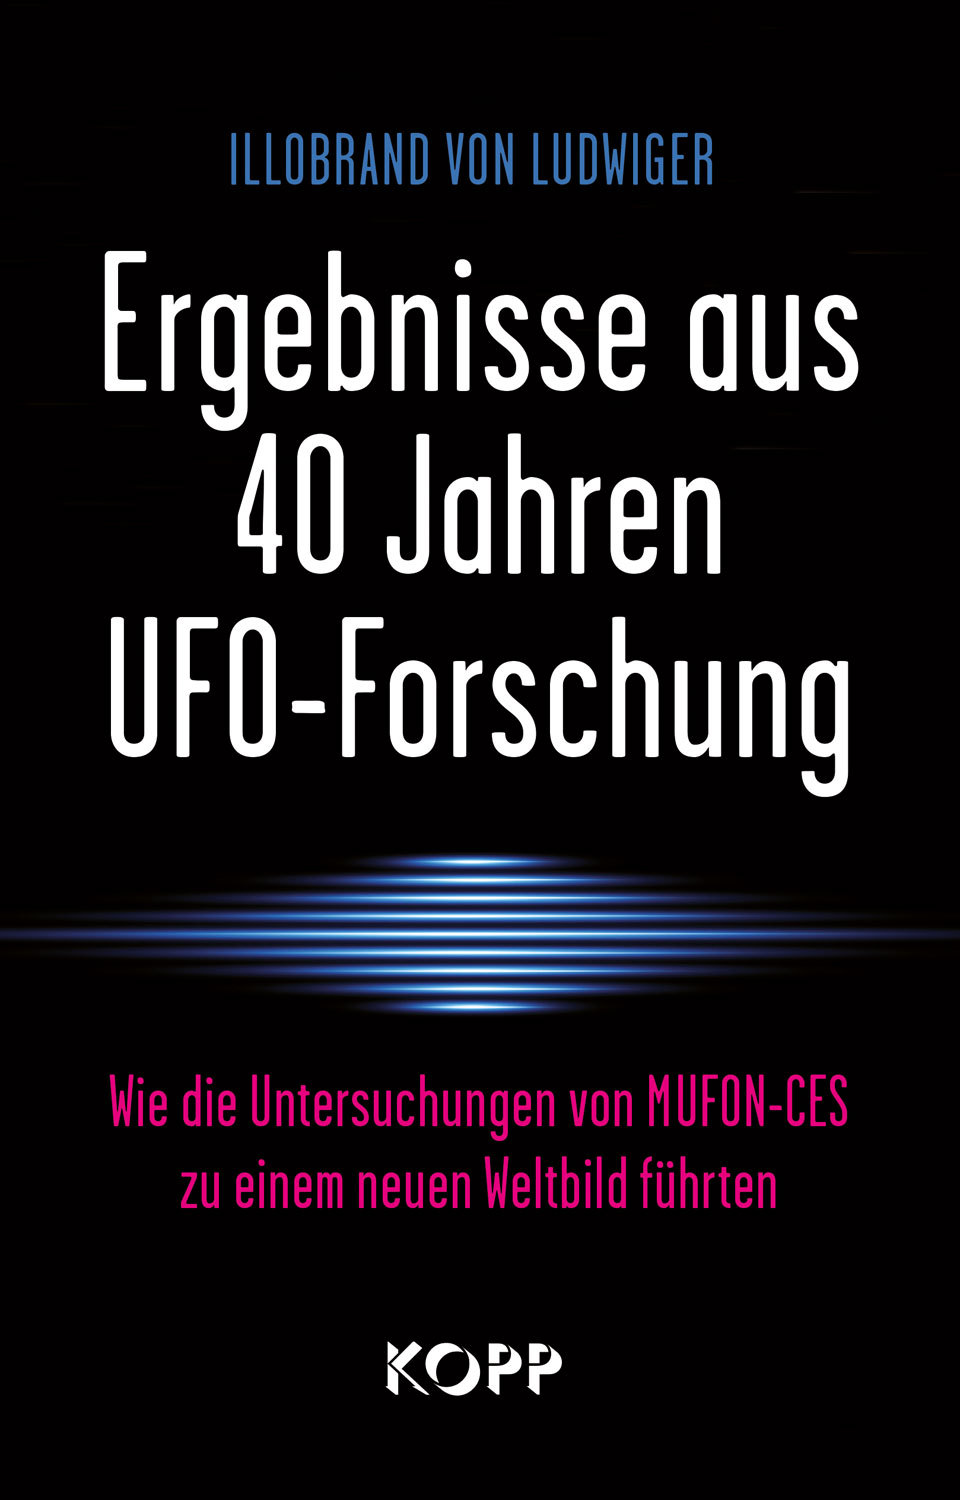 Illobrand von Ludwiger - Ergebnisse aus 40 Jahren UFO-Forschung